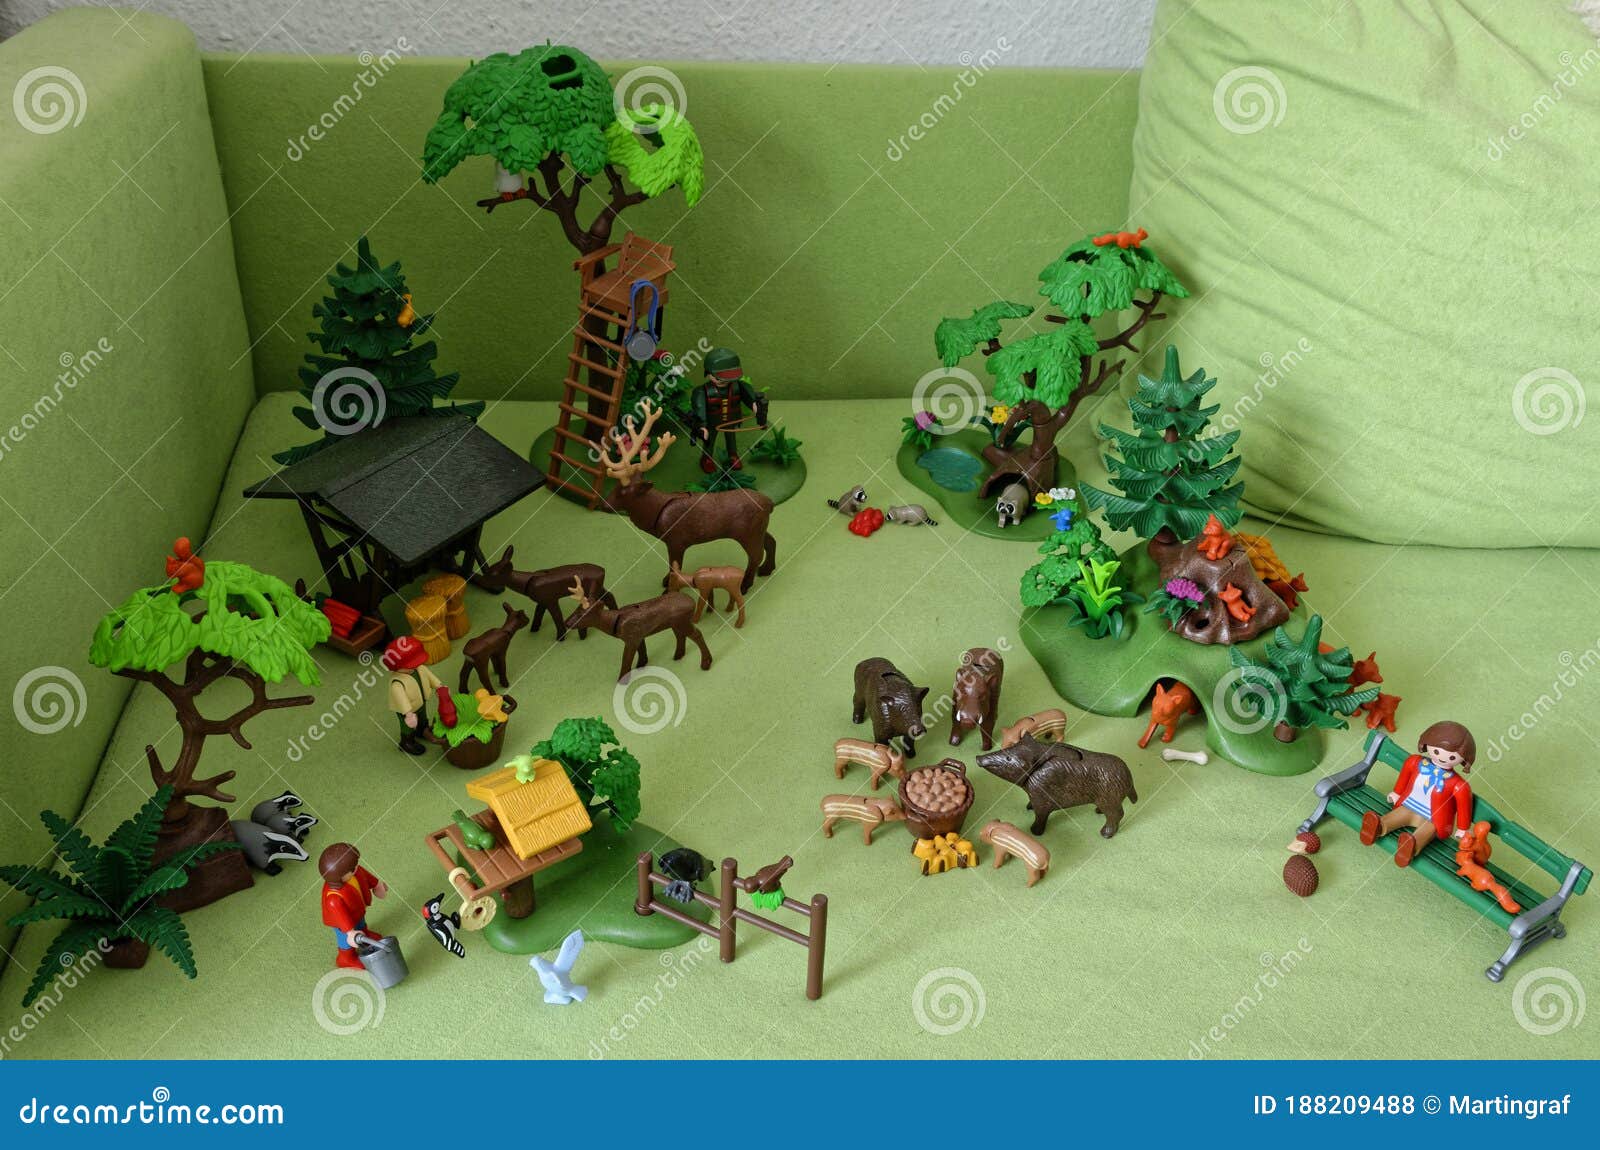 playmobil ensemble pour zoo accessoires animaux